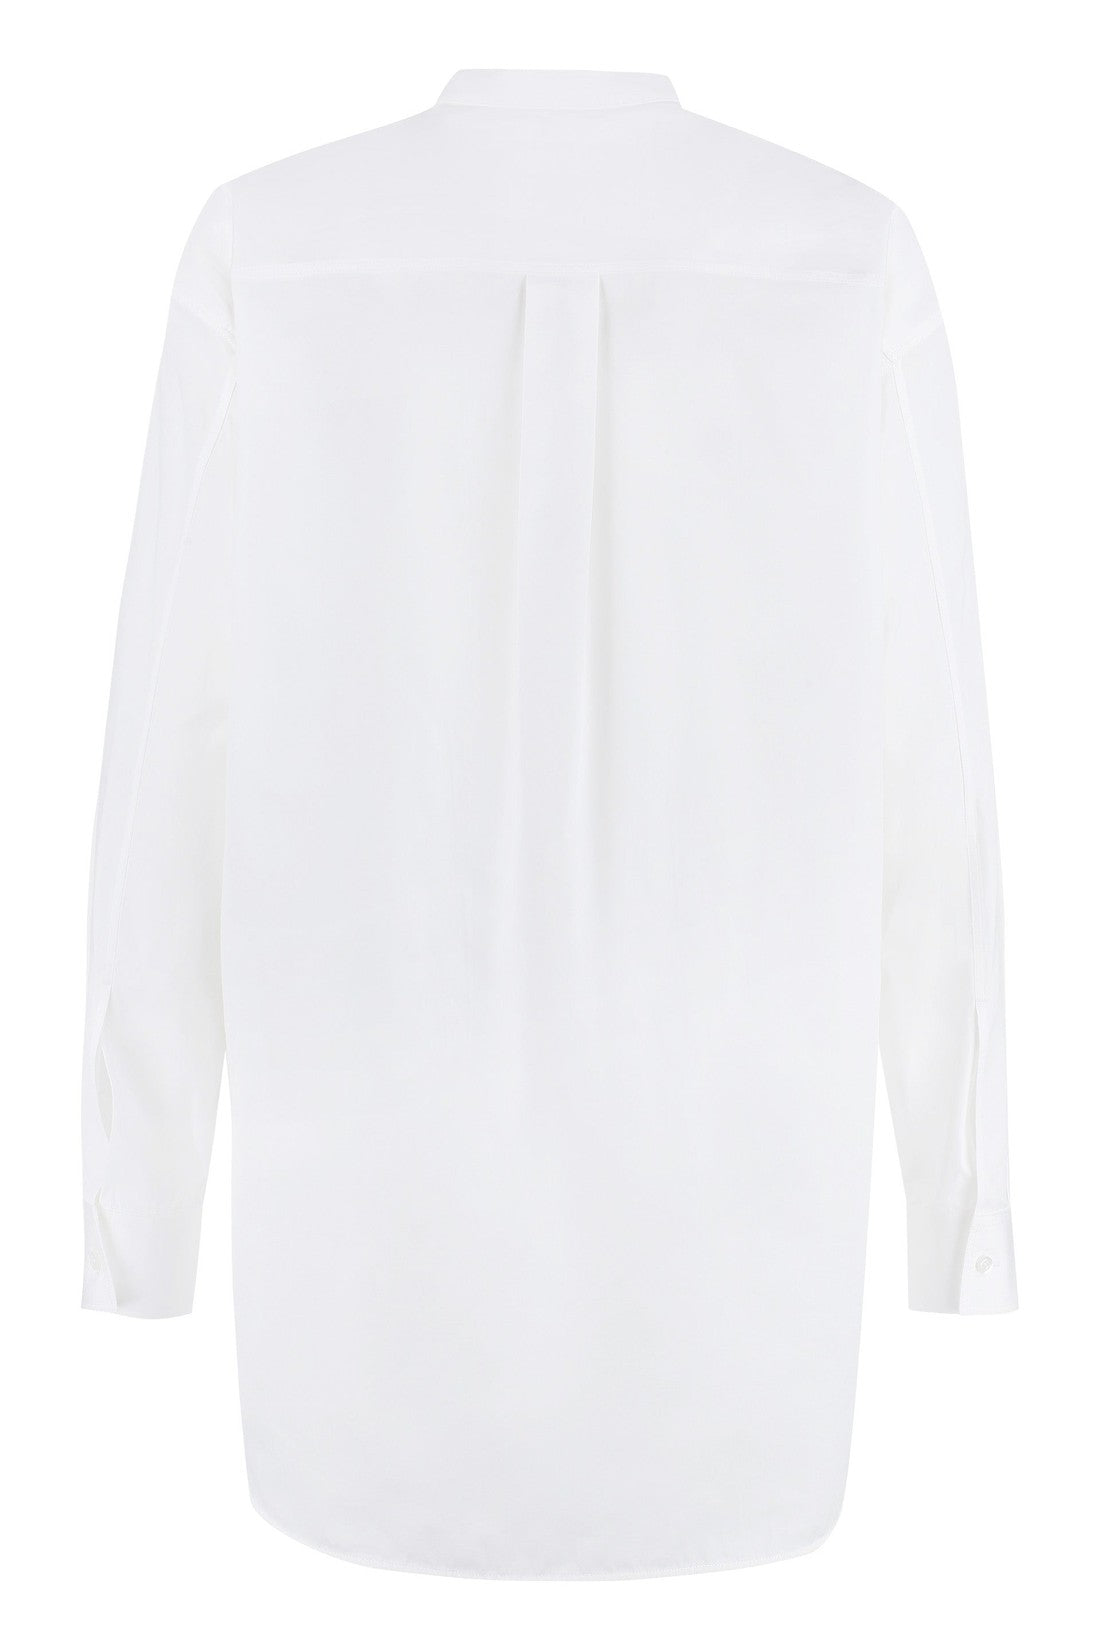 Jil Sander-OUTLET-SALE-Cotton poplin shirt-ARCHIVIST